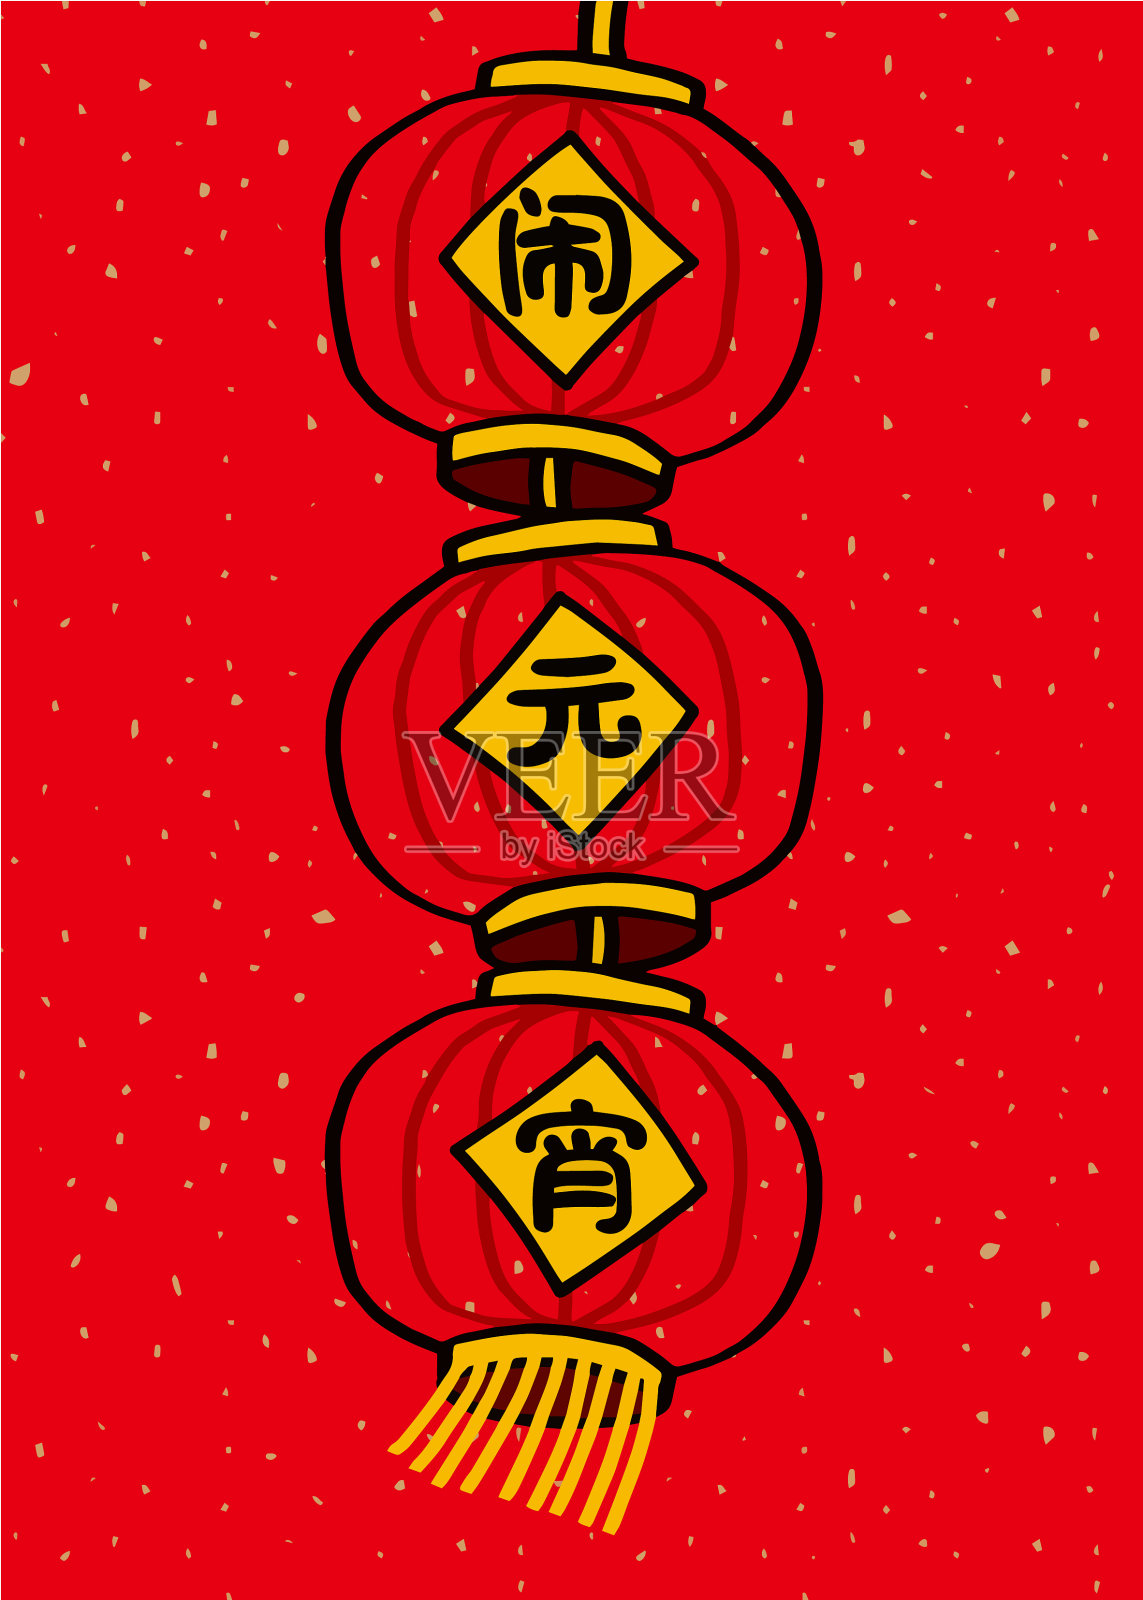 中国元宵节、元宵节、中国传统节日矢量插画。(翻译:中国元宵节，农历正月十五)设计模板素材